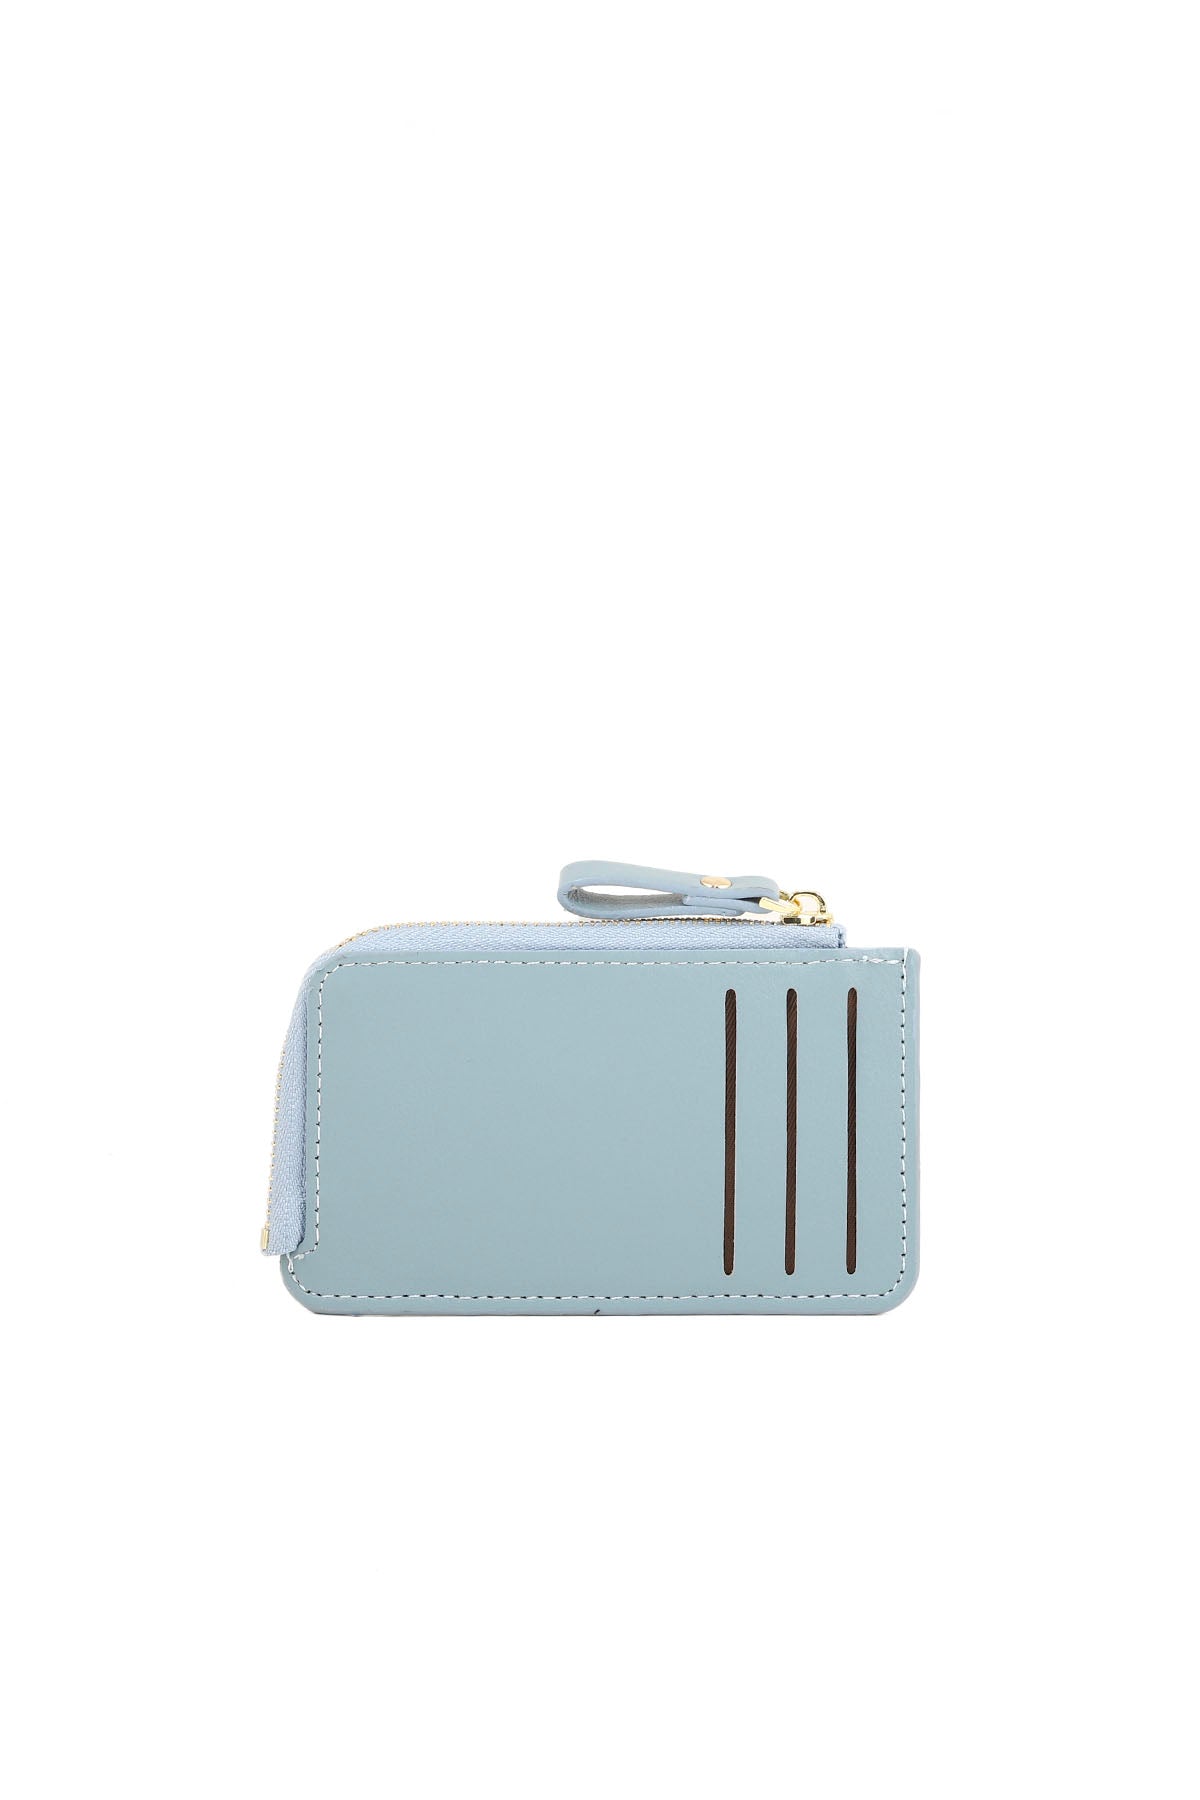 Wristlet Wallet B26050-Blue